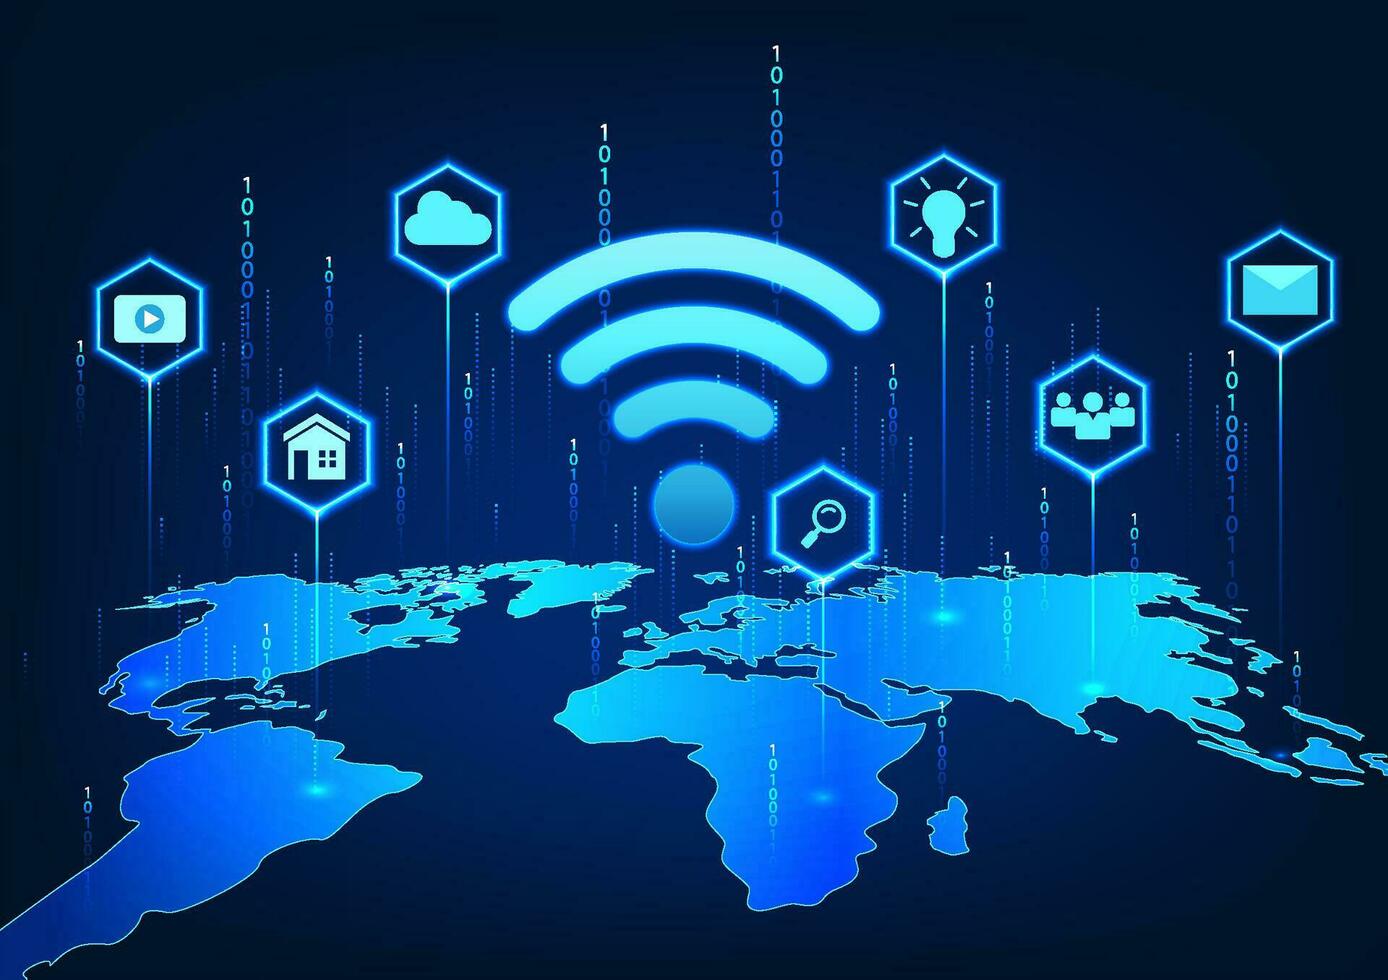 Wi-fi tecnologia em a mundo mapa com ícones e atrás a número código refere para a Wi-fi tecnologia usava no mundo todo para Acesso para entretenimento, comunicação, e trabalhar. vetor